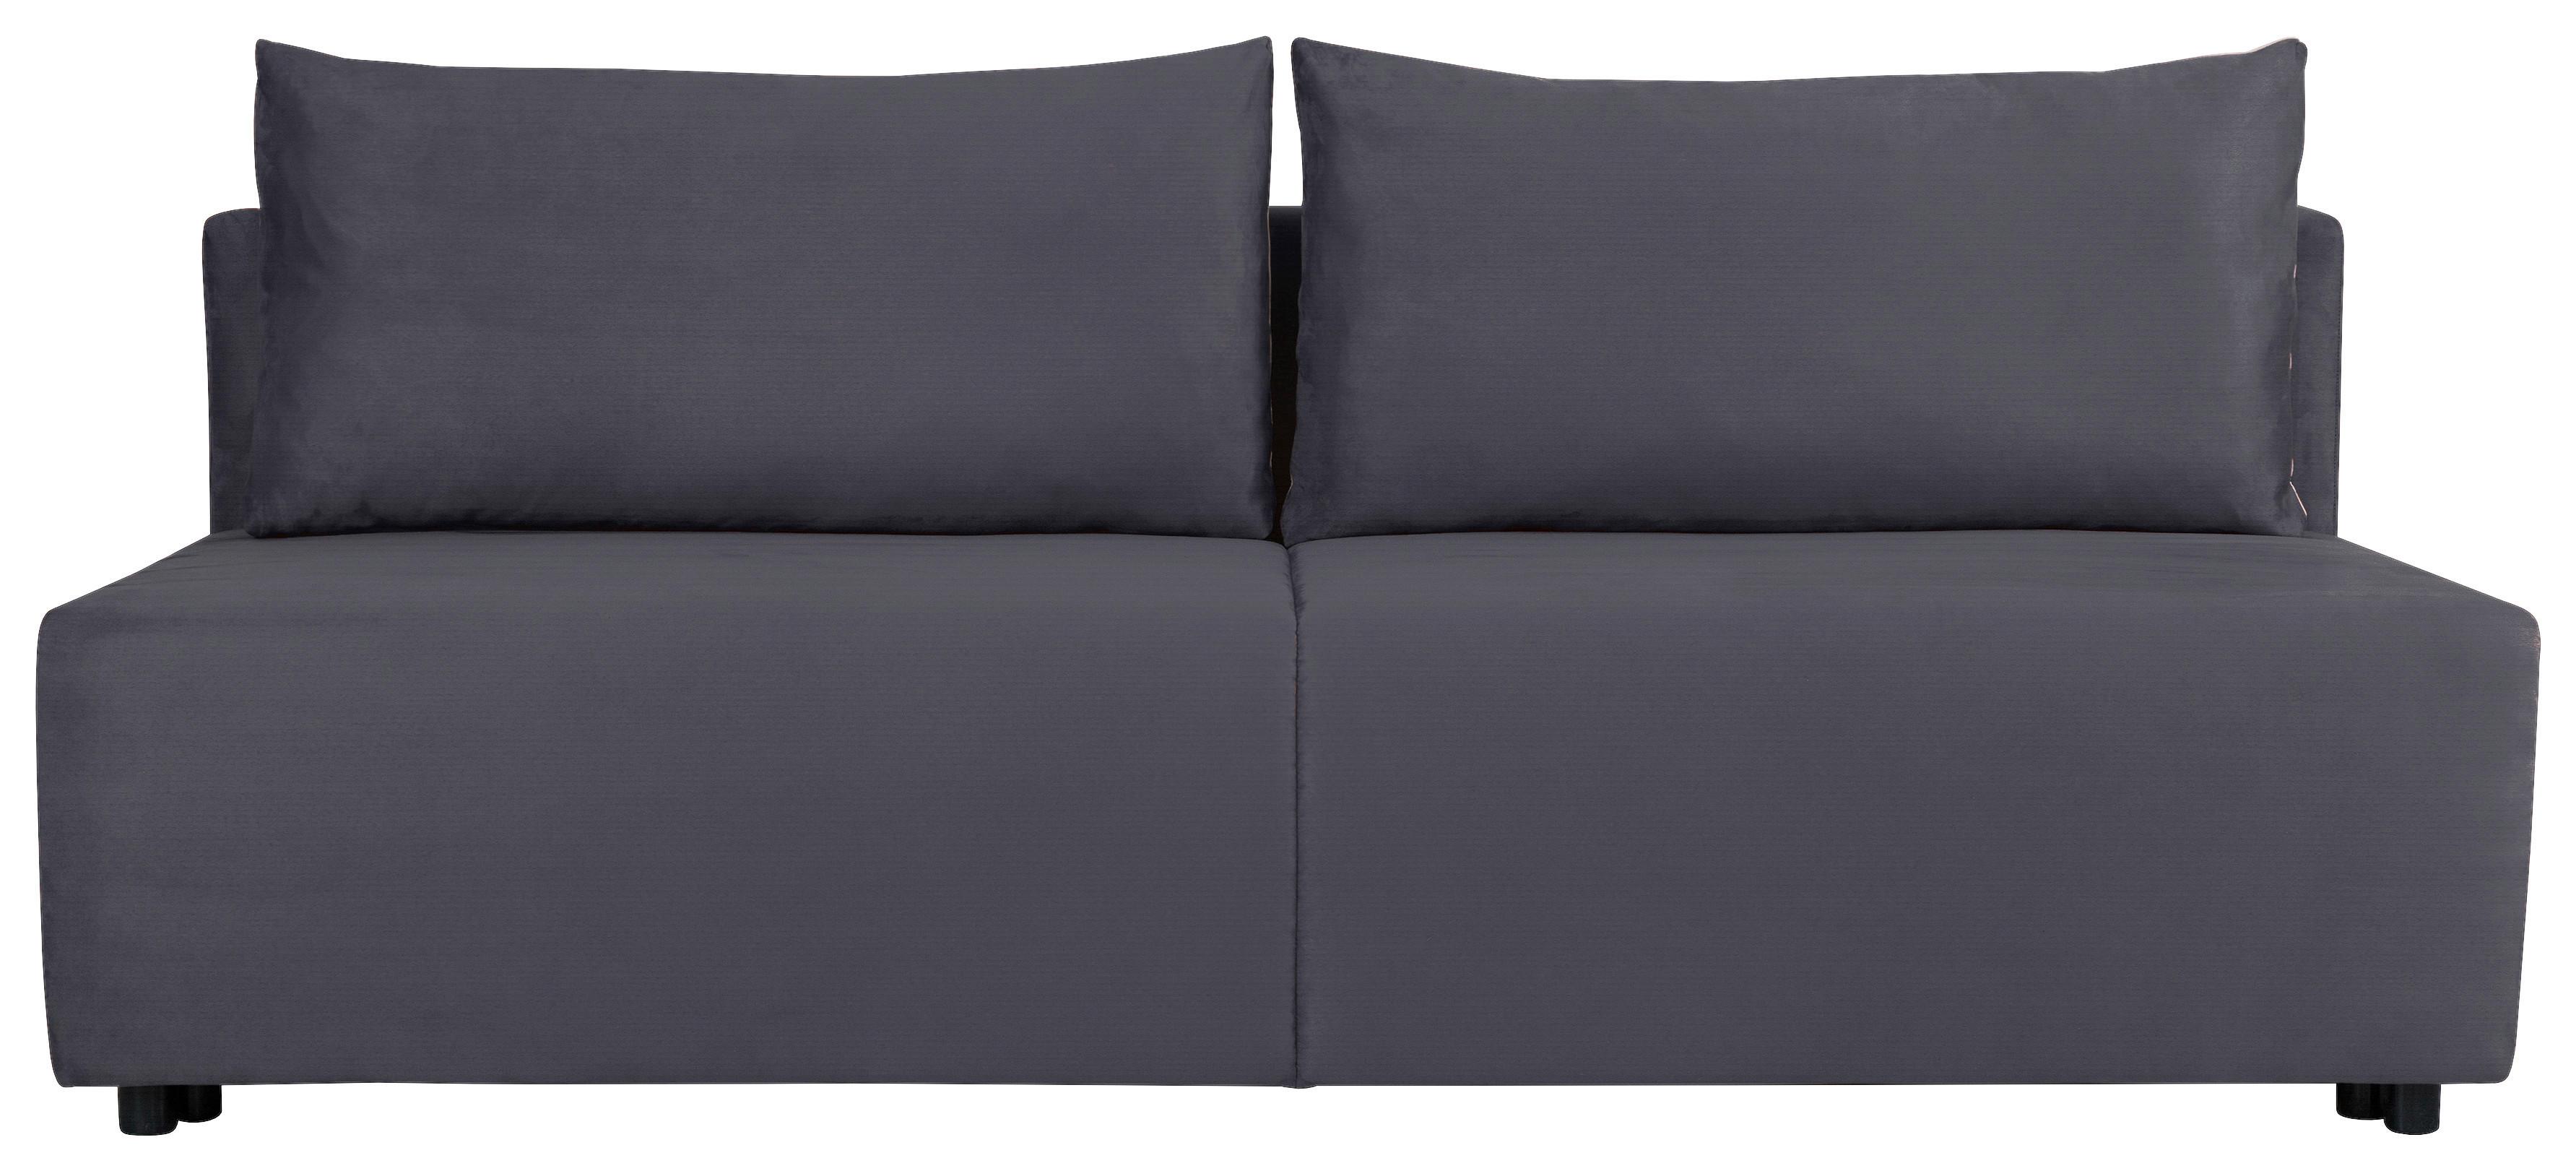 Sofa Basic - Modern (89/74/201cm) - Based